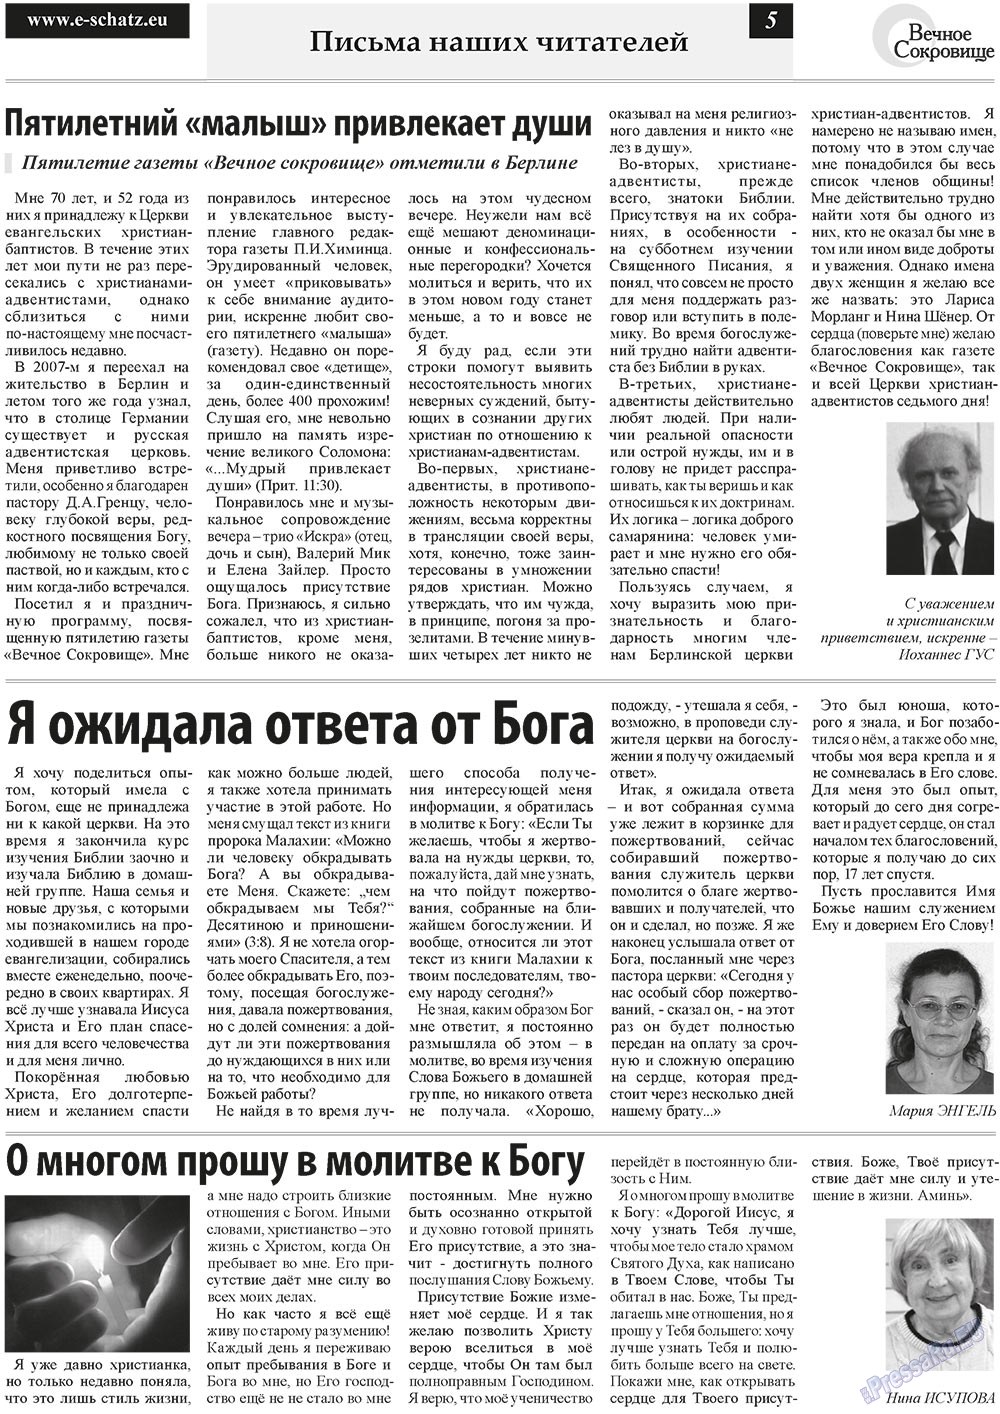 Вечное сокровище (газета). 2011 год, номер 1, стр. 5